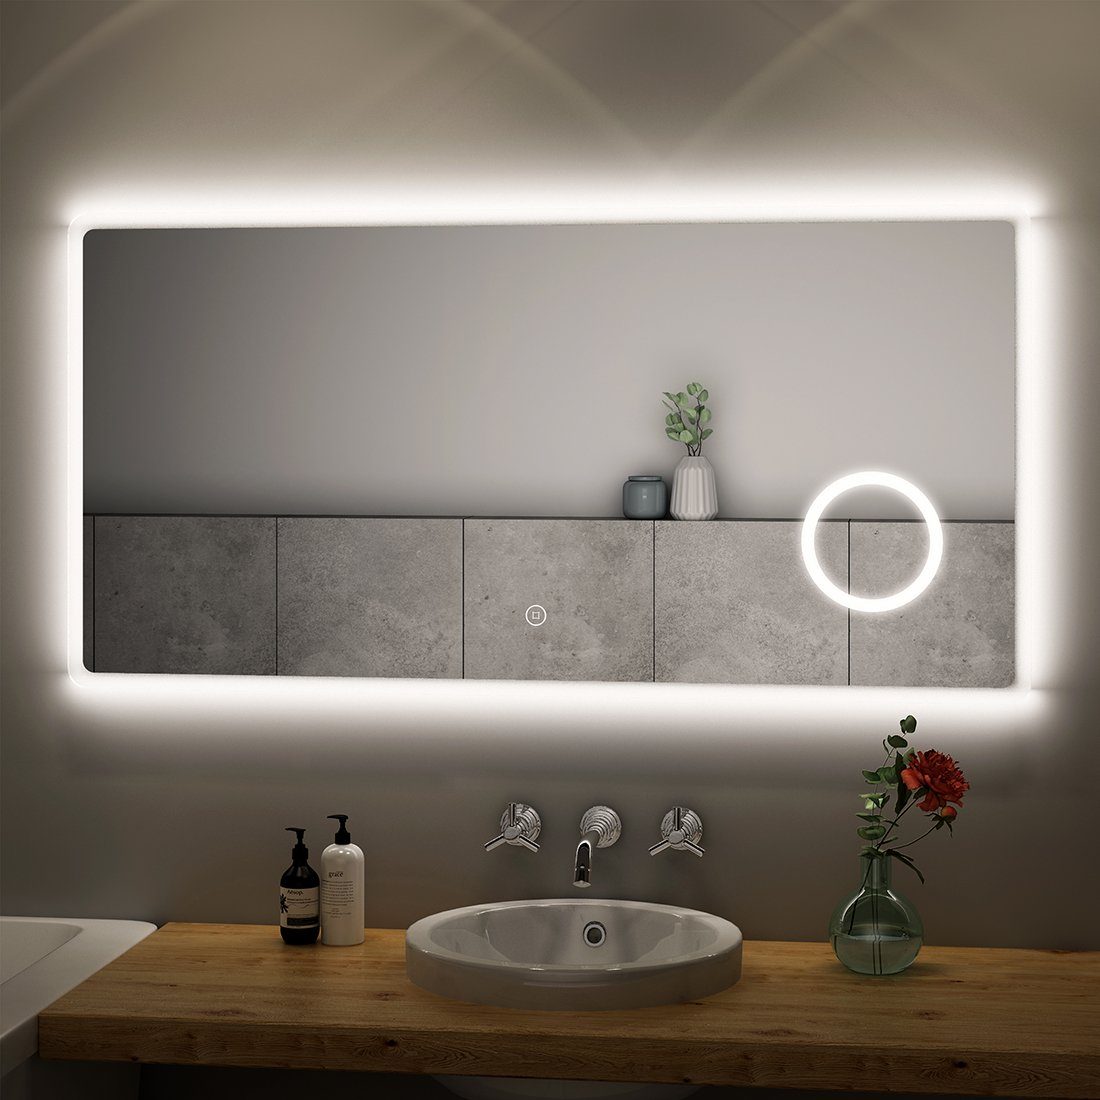 S'AFIELINA Badspiegel Badspiegel mit Beleuchtung Wandspiegel Led Badspiegel, 120x60cm,Kaltweiß 6500K,Touchschalter,3-fach Vergrößerung,IP 54